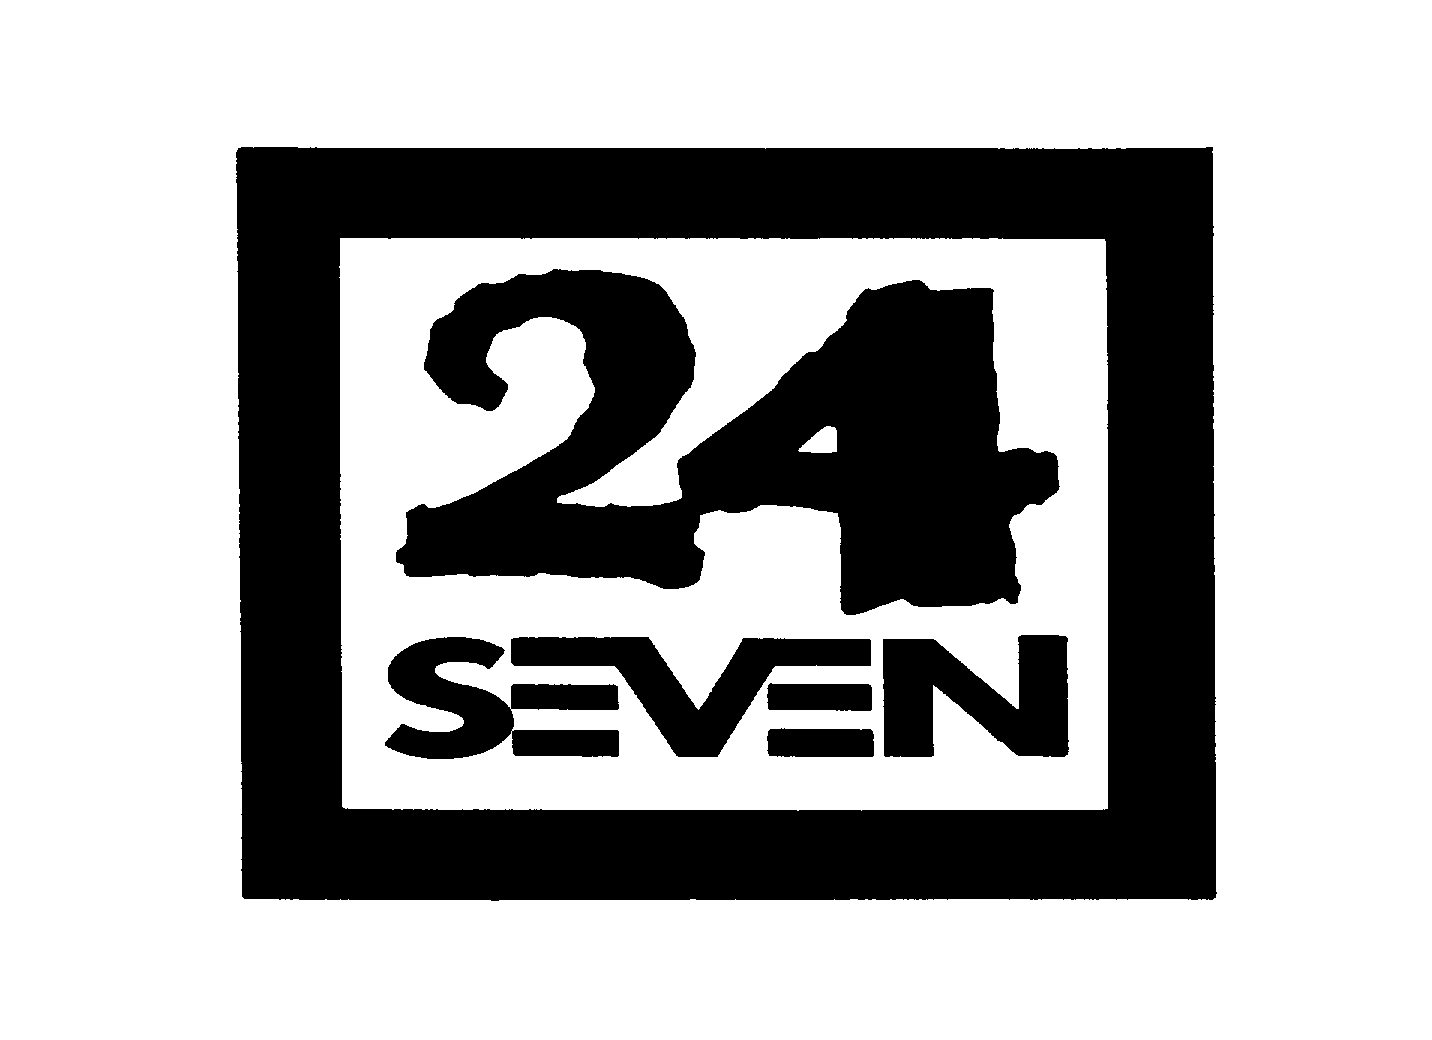  24 SEVEN